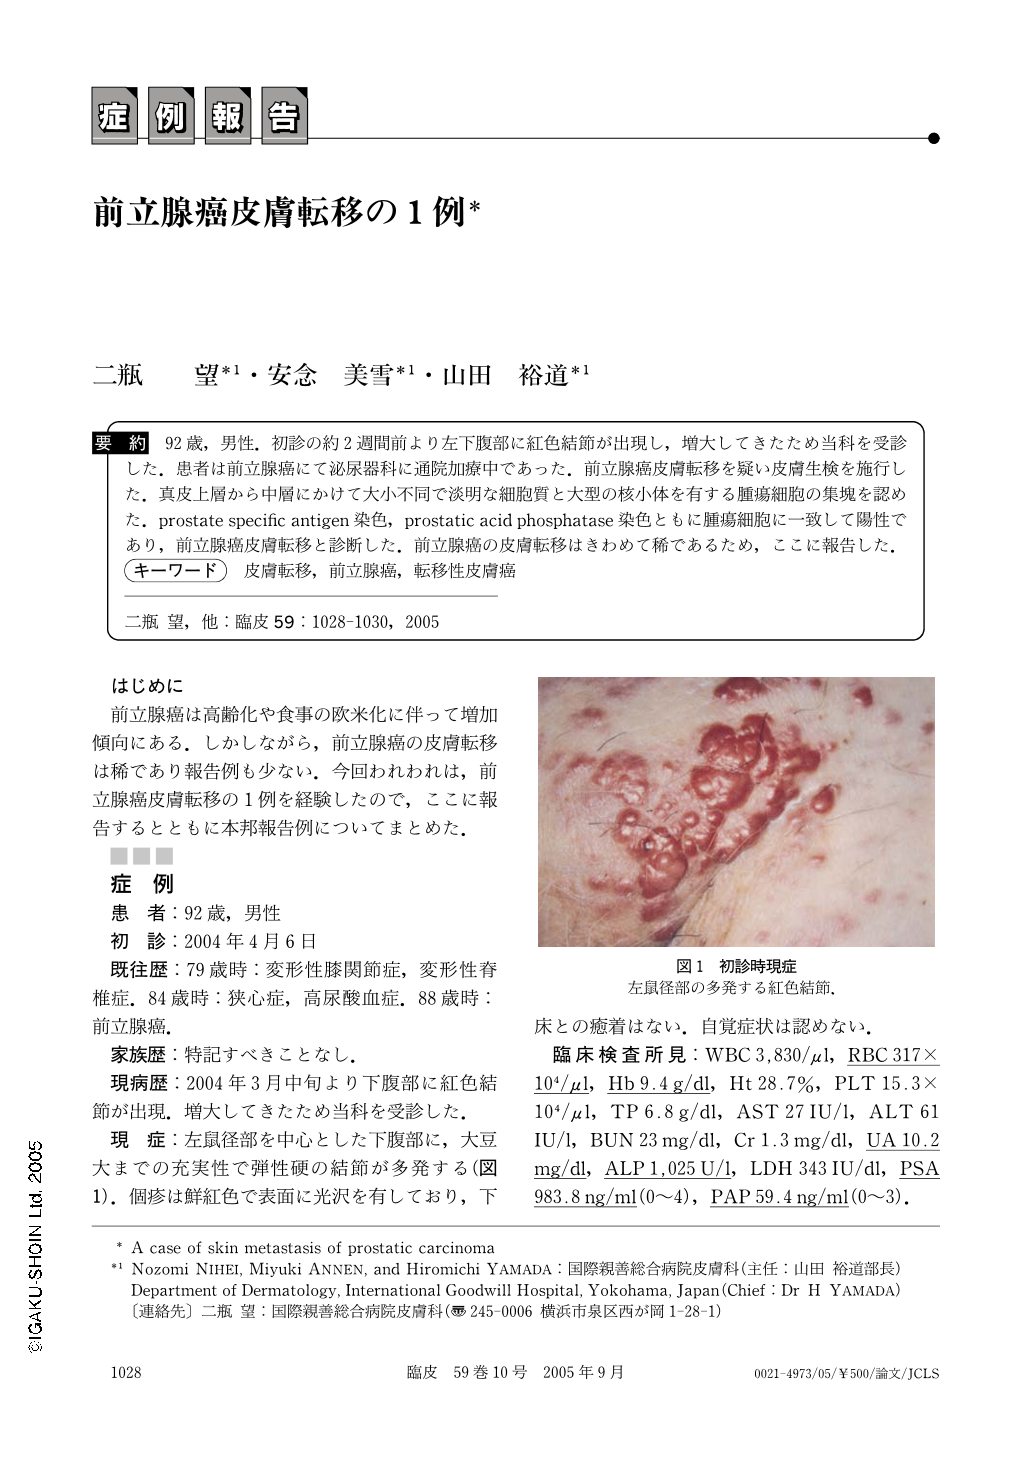 前立腺癌皮膚転移の1例 臨床皮膚科 59巻10号 医書 Jp